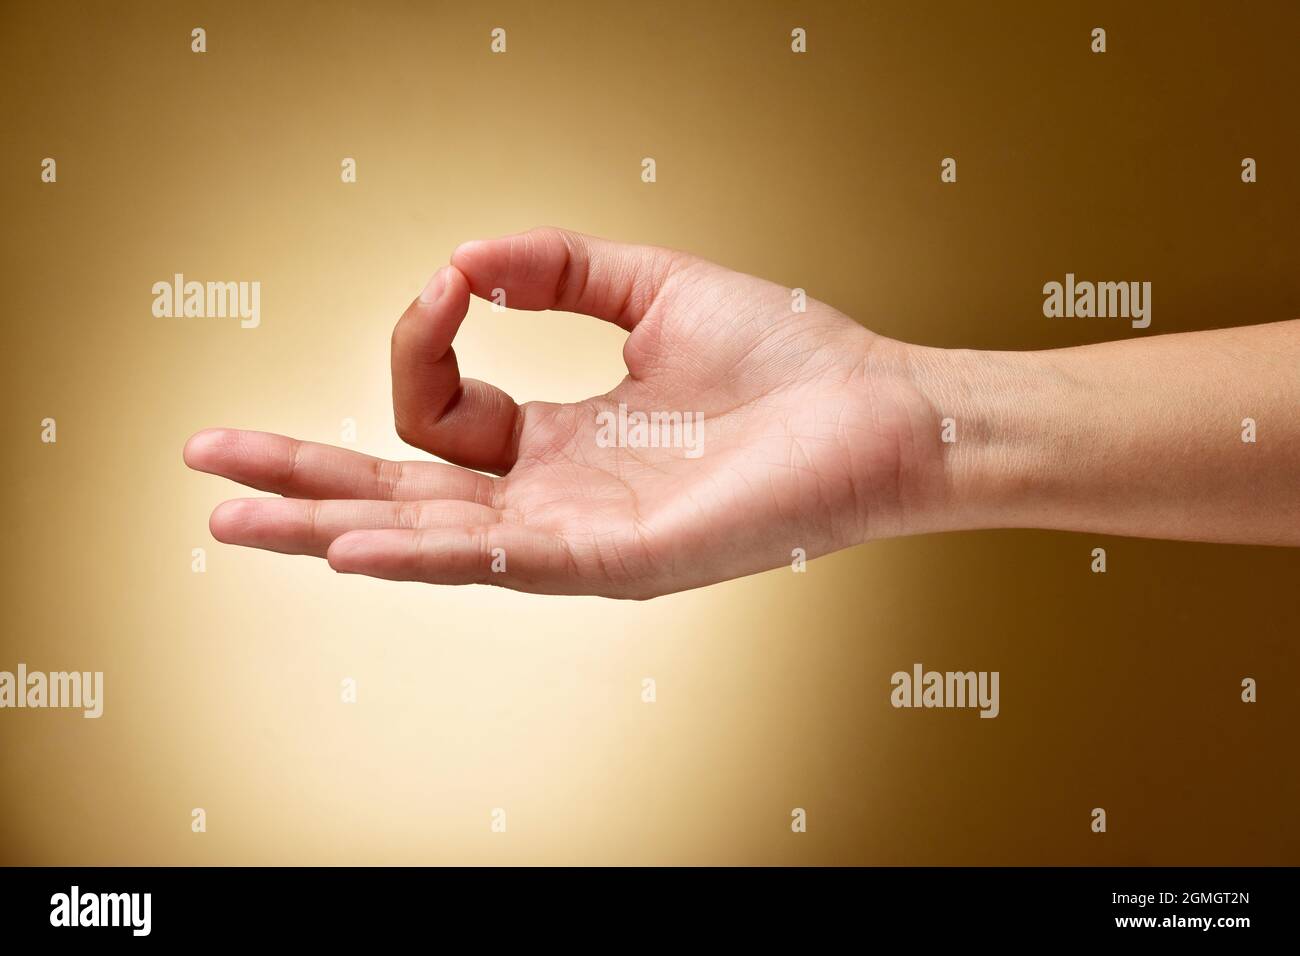 Gyan Mudra Gesture Hand Stock Photo